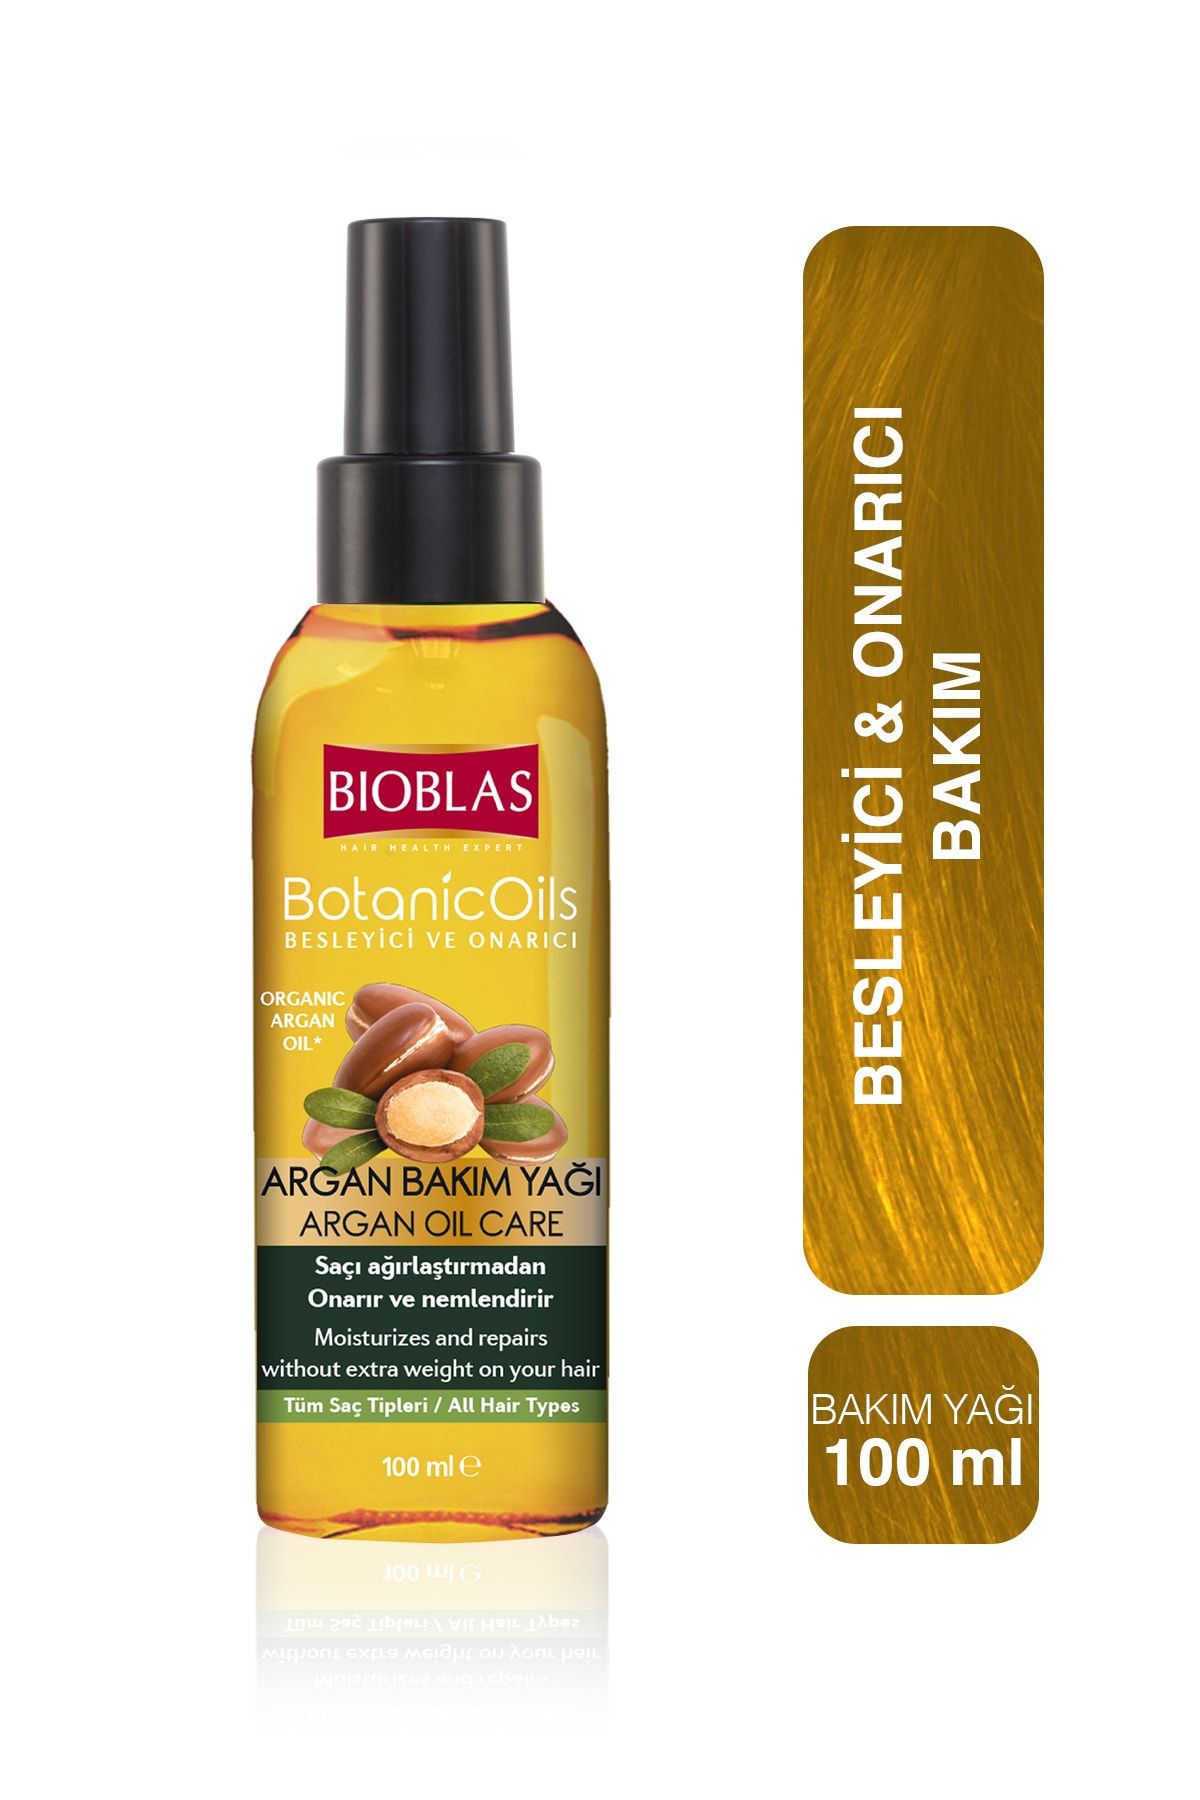 Bioblas Argan Bakım Yağı 100 ml  - Onarıcı Bakım Yağı